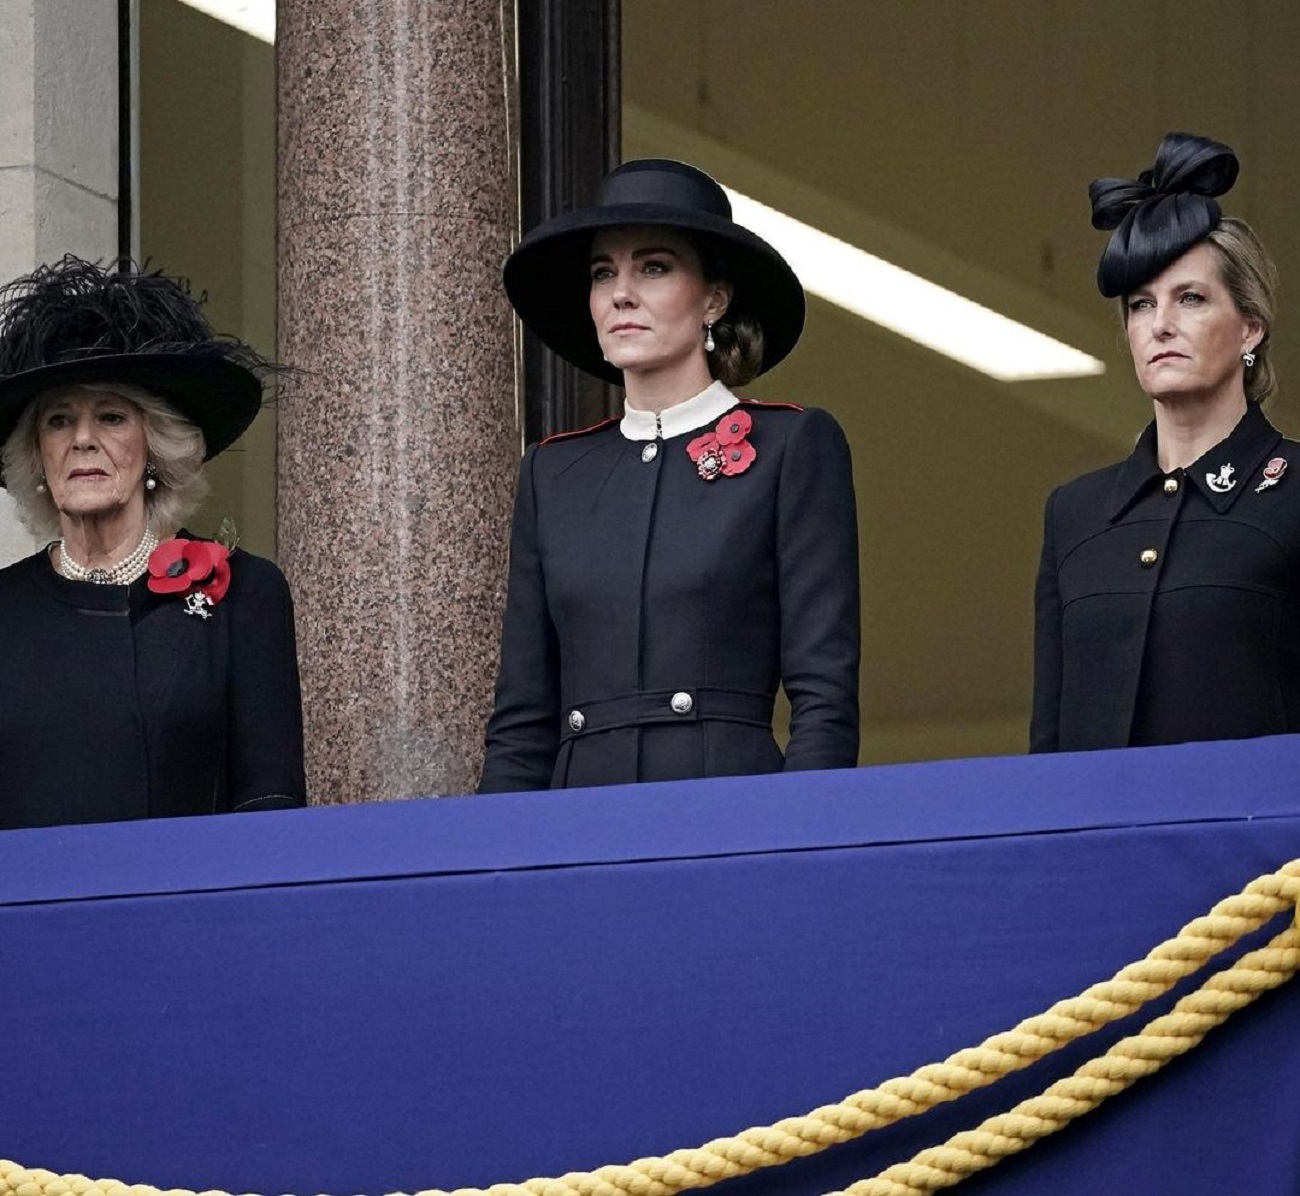 Королевский выход: Кейт Миддлтон в платье-мундире и модной шляпке на торжественной церемонии